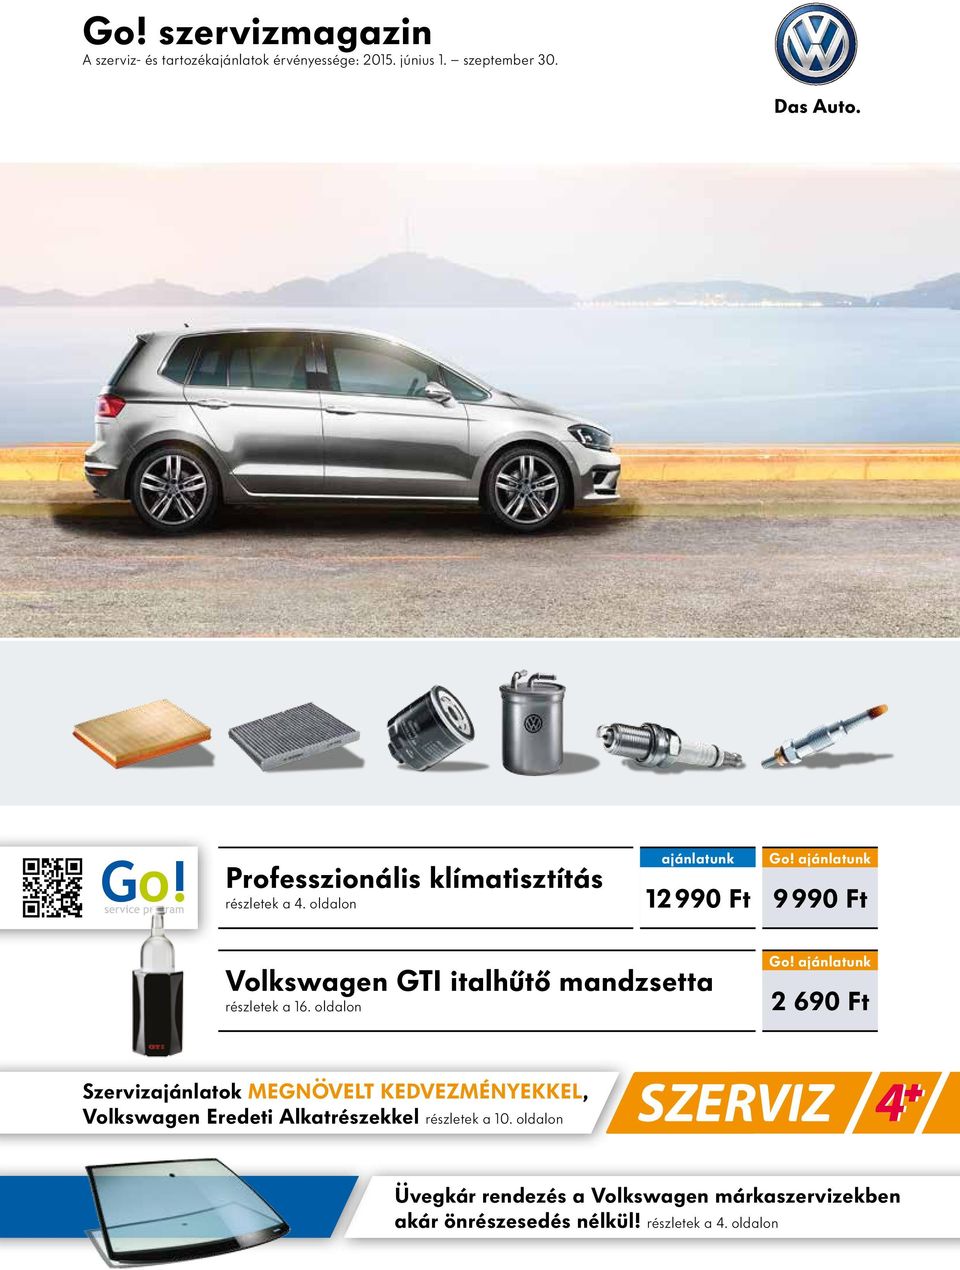 ajánlatunk 9 990 Ft Volkswagen GTI italhűtő mandzsetta részletek a 16. oldalon Go!